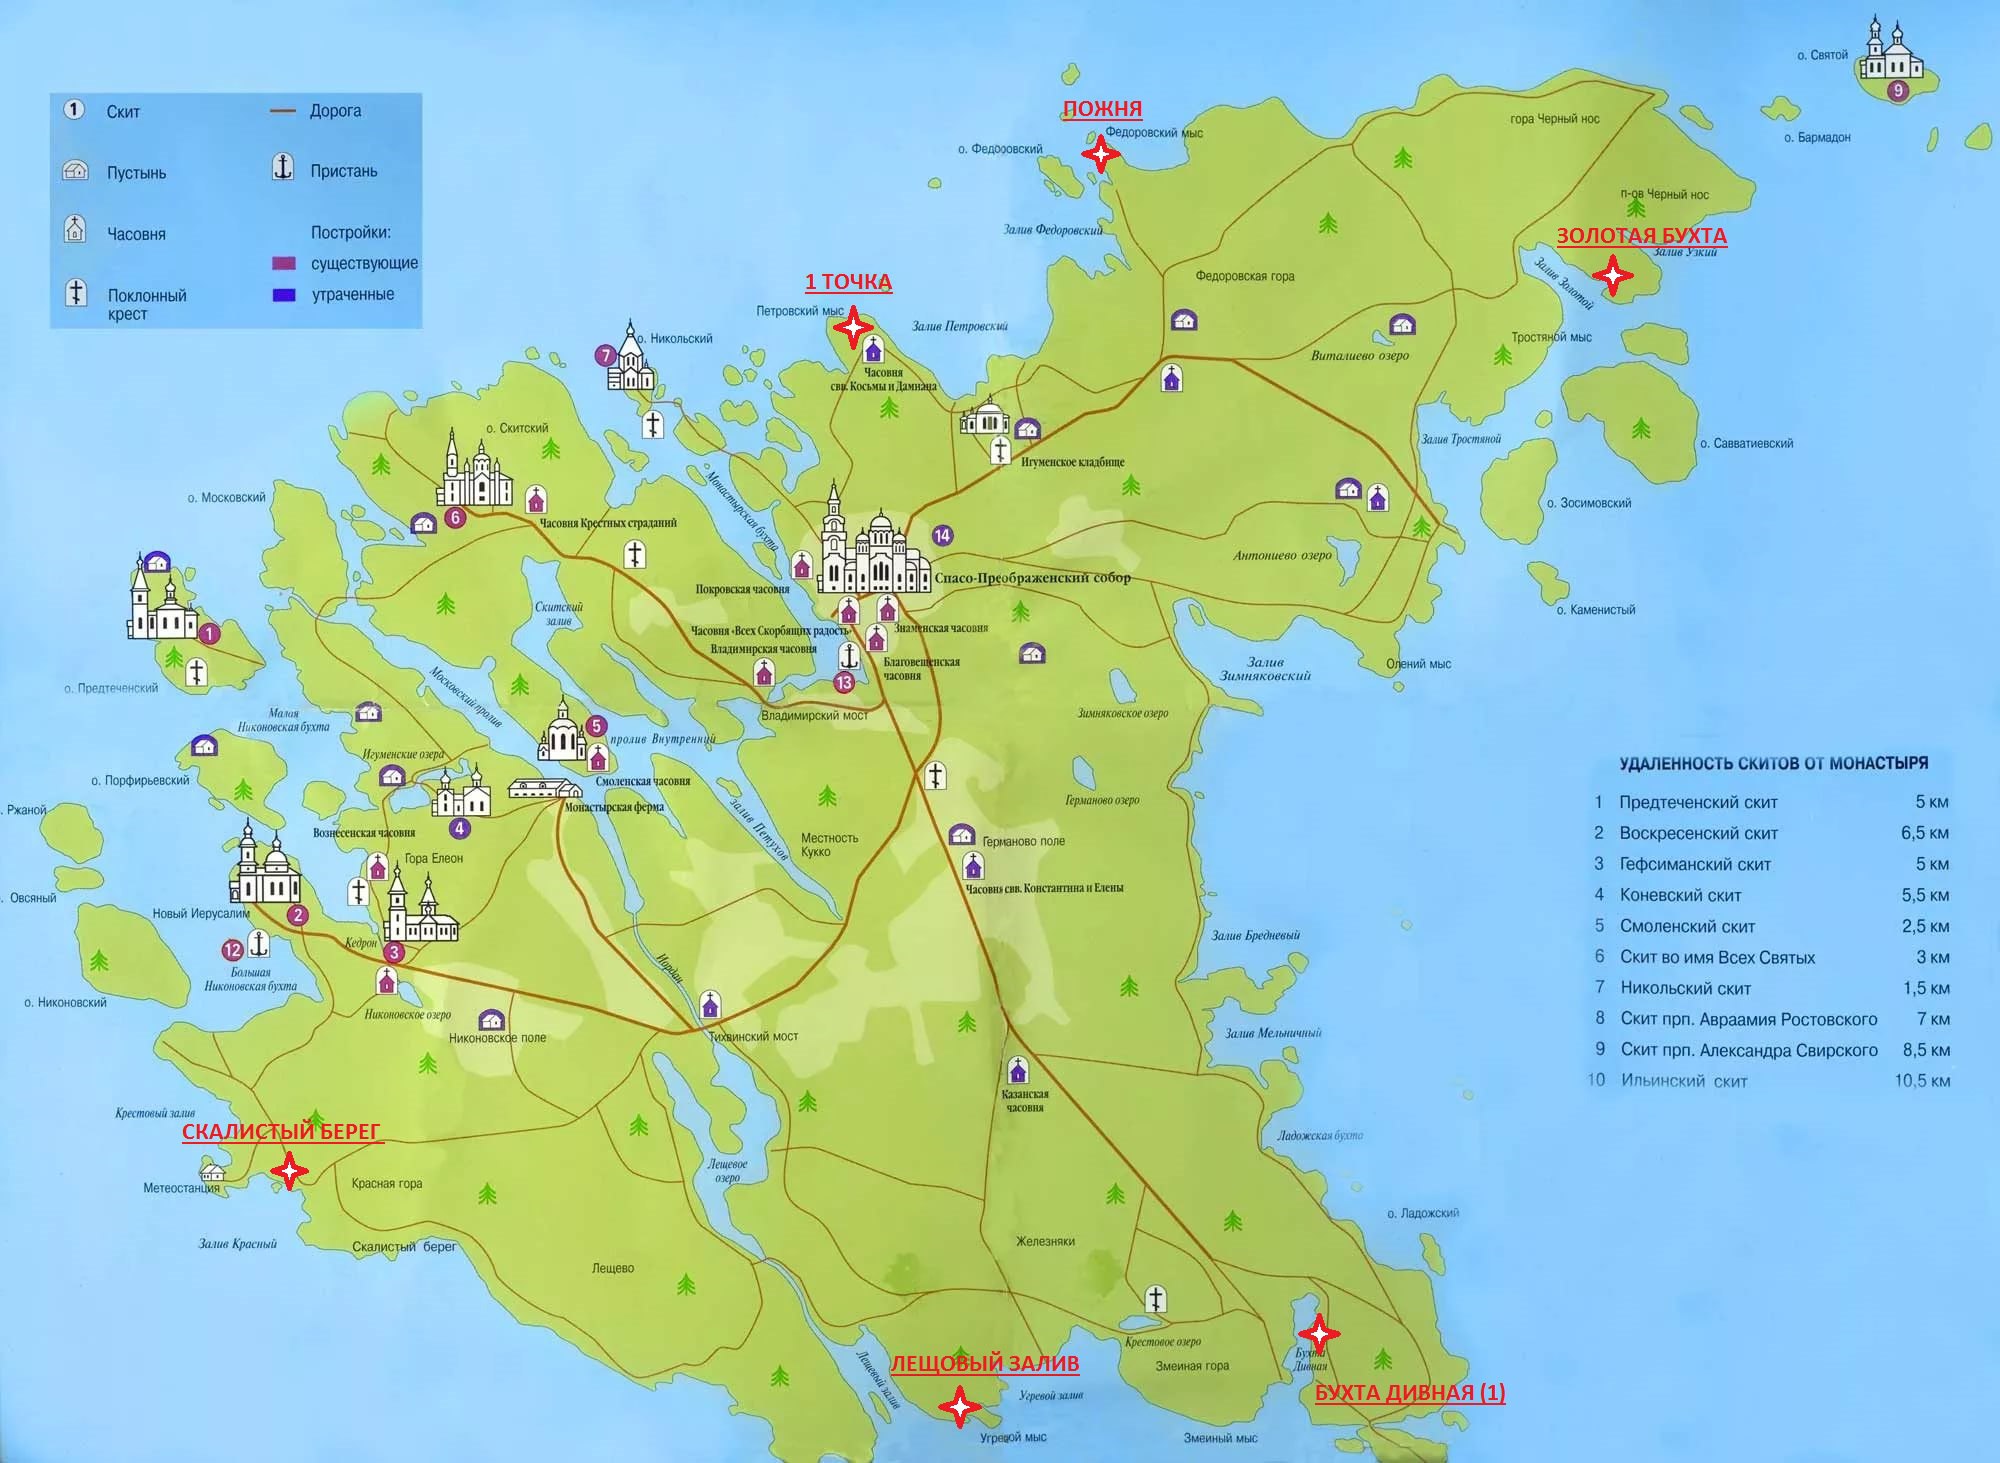 Палаточные стоянки отмечены на карте красным. Источник: группа во «Вконтакте» «Палаточные стоянки на острове Валаам»